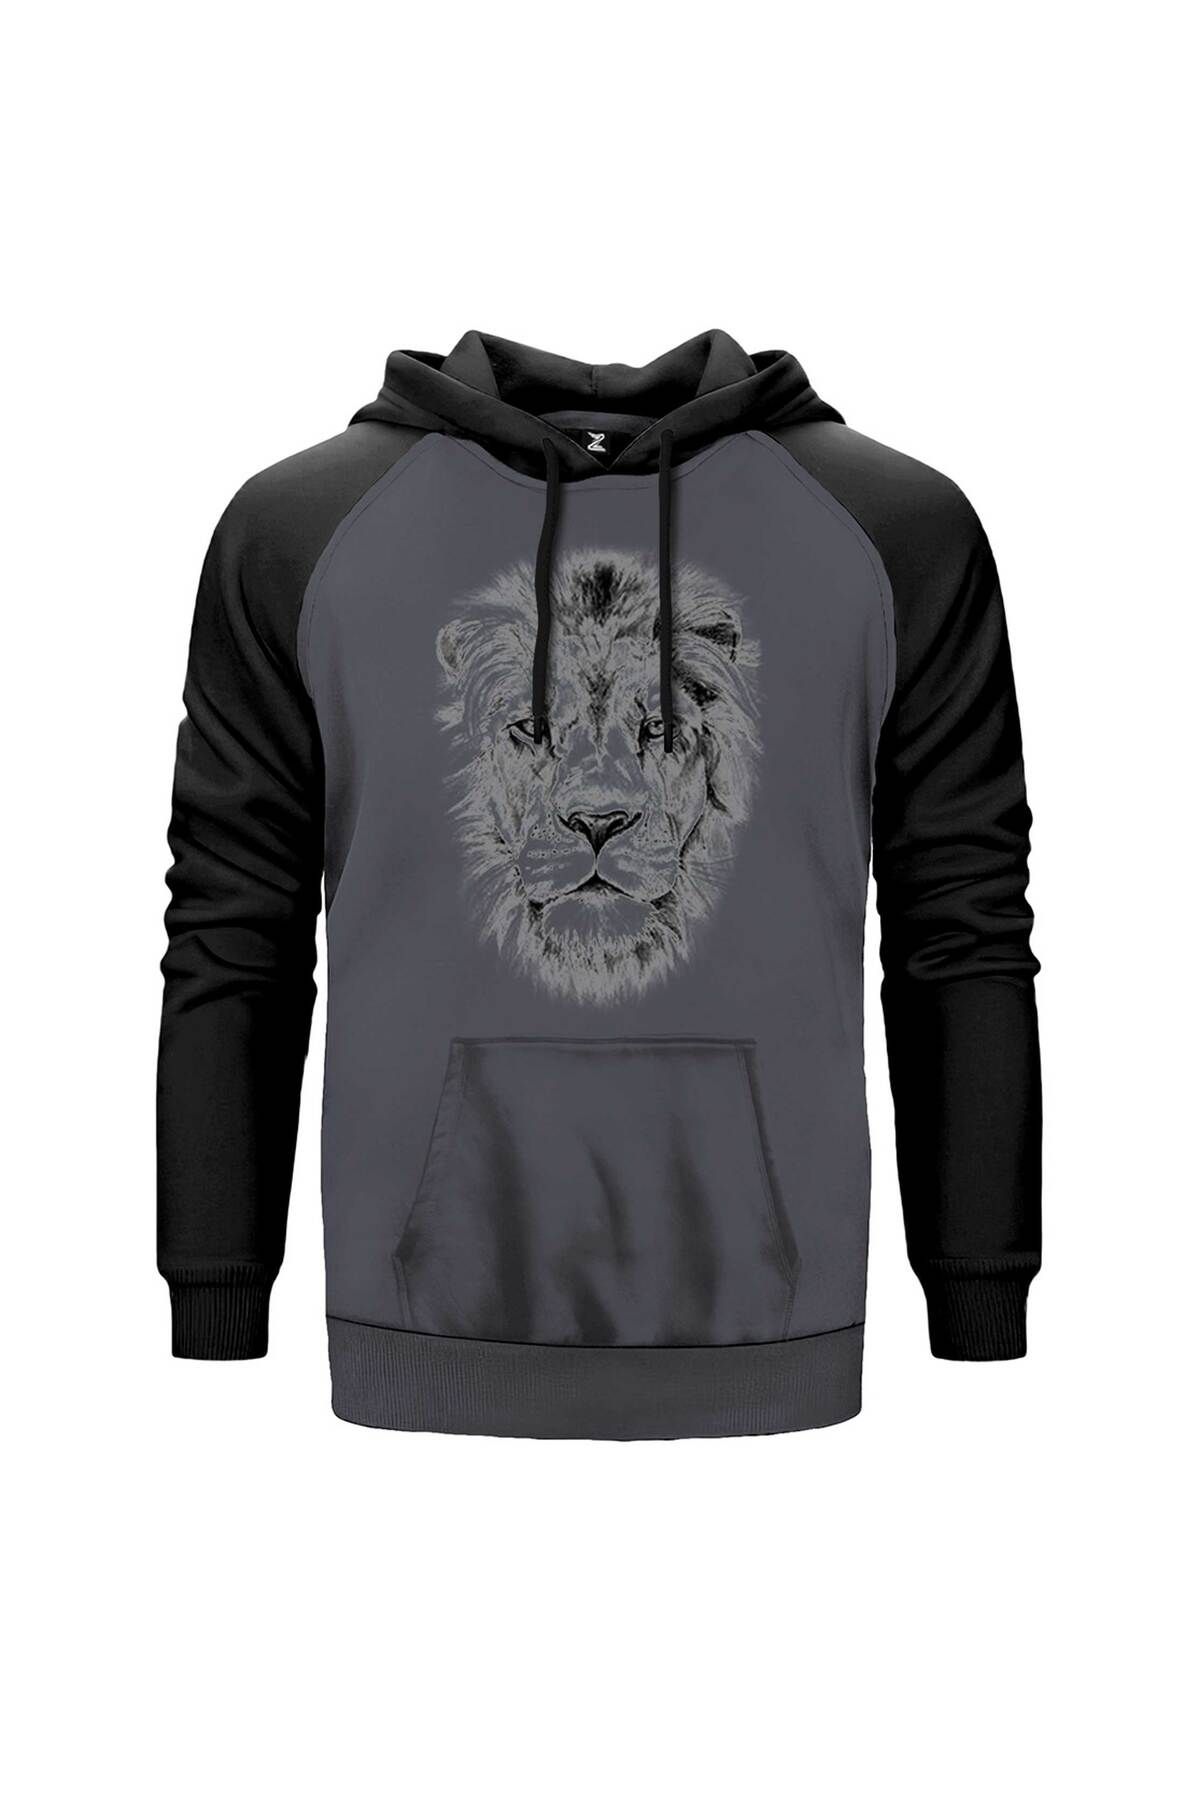 Z zepplin Lion Face Gri Renk Reglan Kol Sweatshirt